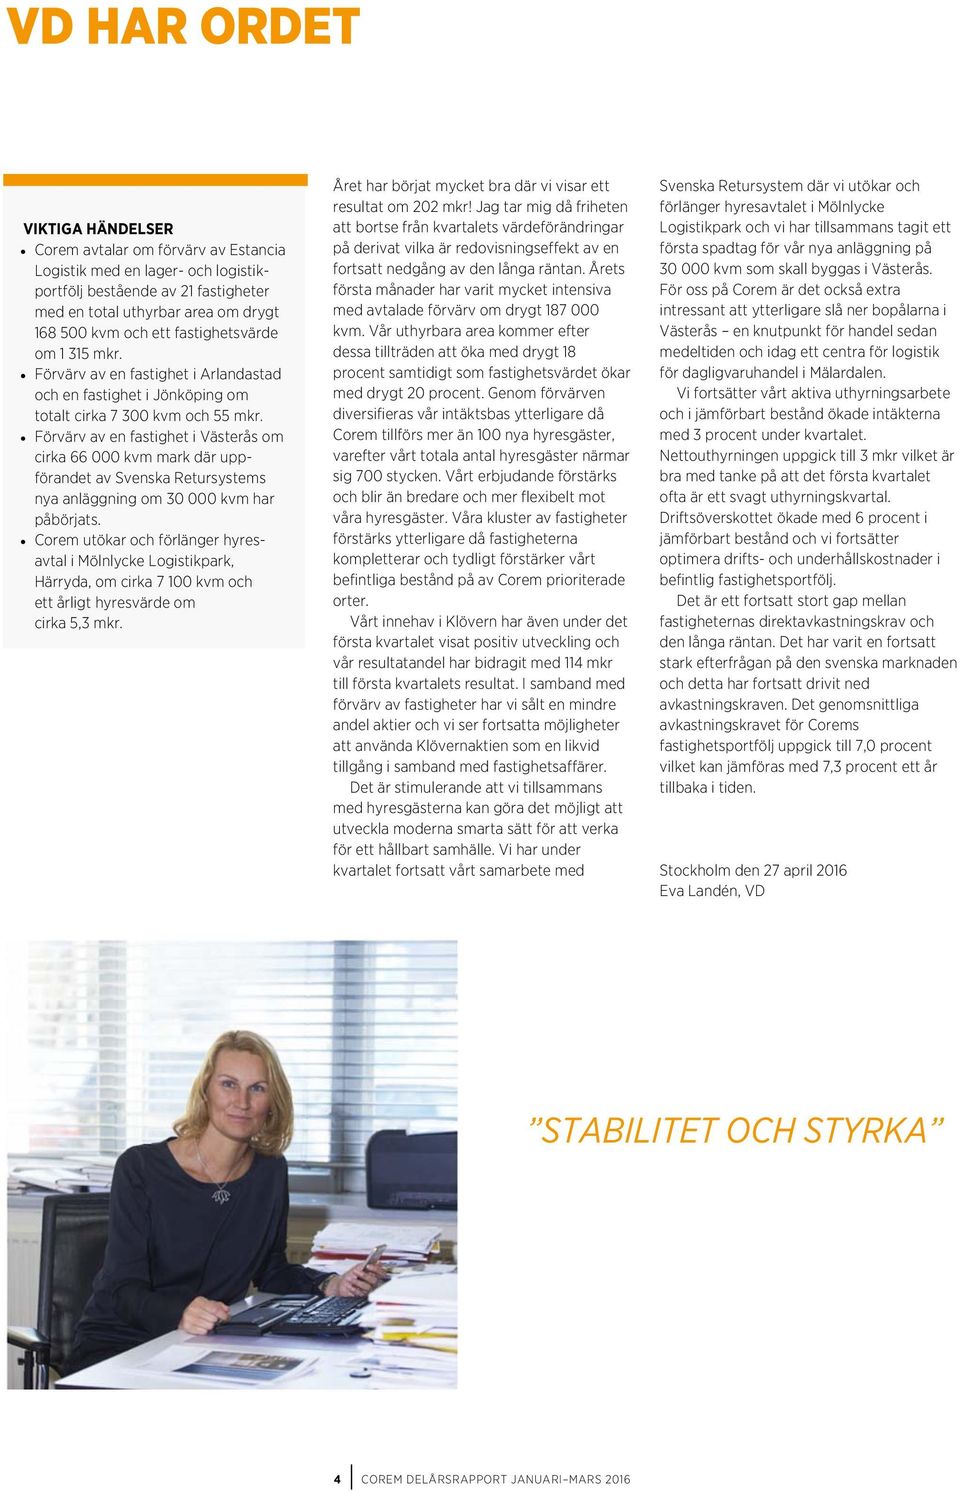 Förvärv av en fastighet i Västerås om cirka 66 000 kvm mark där uppförandet av Svenska Retursystems nya anläggning om 30 000 kvm har påbörjats.